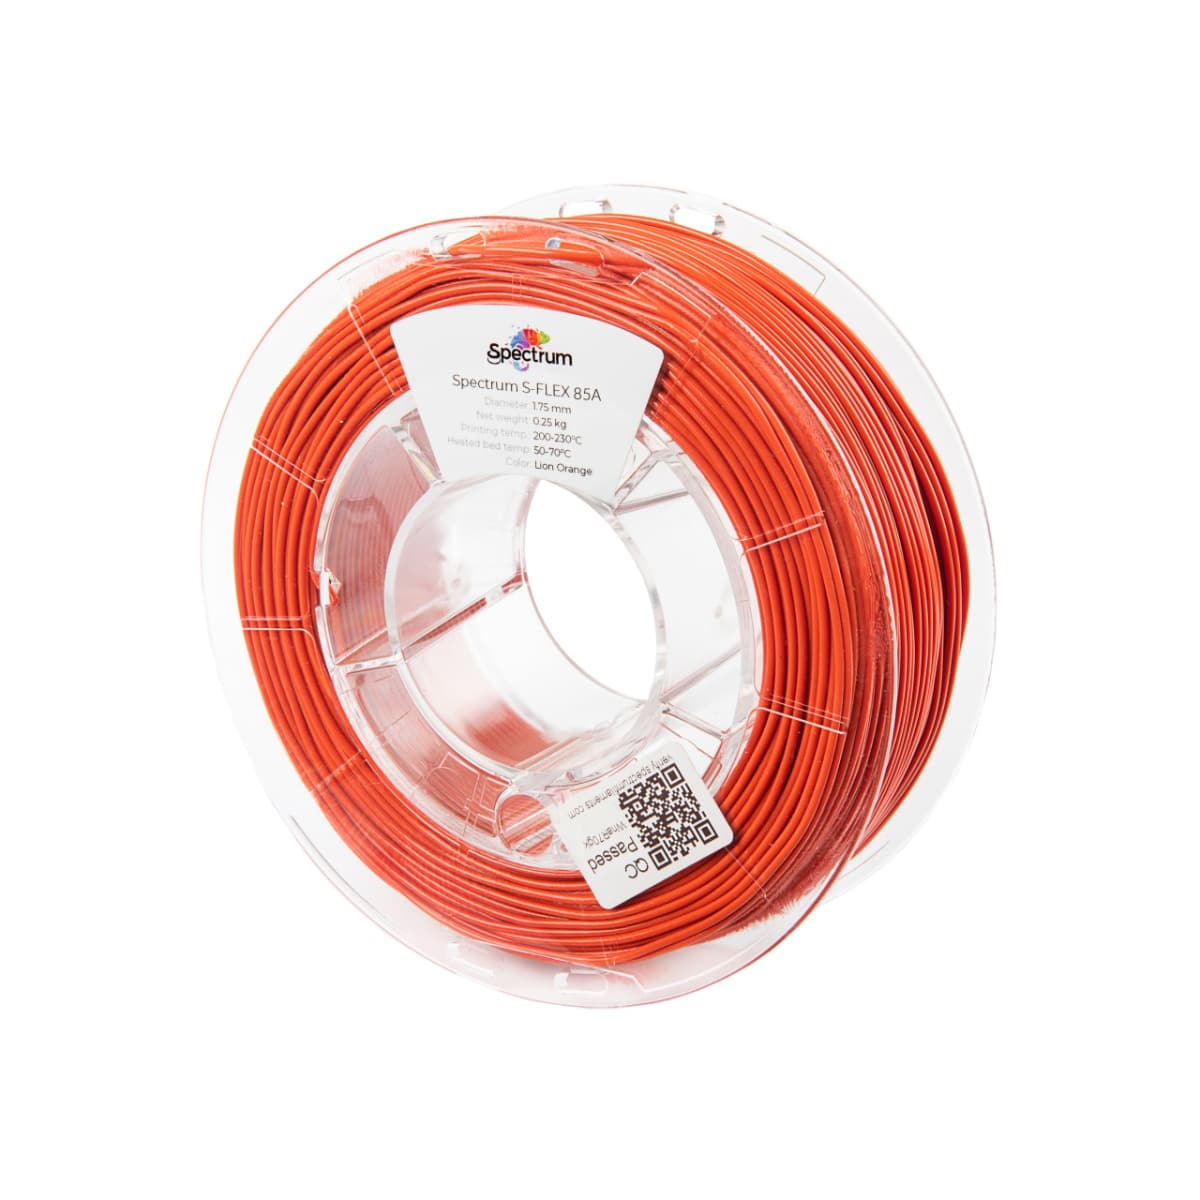 Køb Spectrum Filaments - S-Flex 85A - 1.75mm - Lion Orange - 0.25kg filament - Pris 140.00 kr.